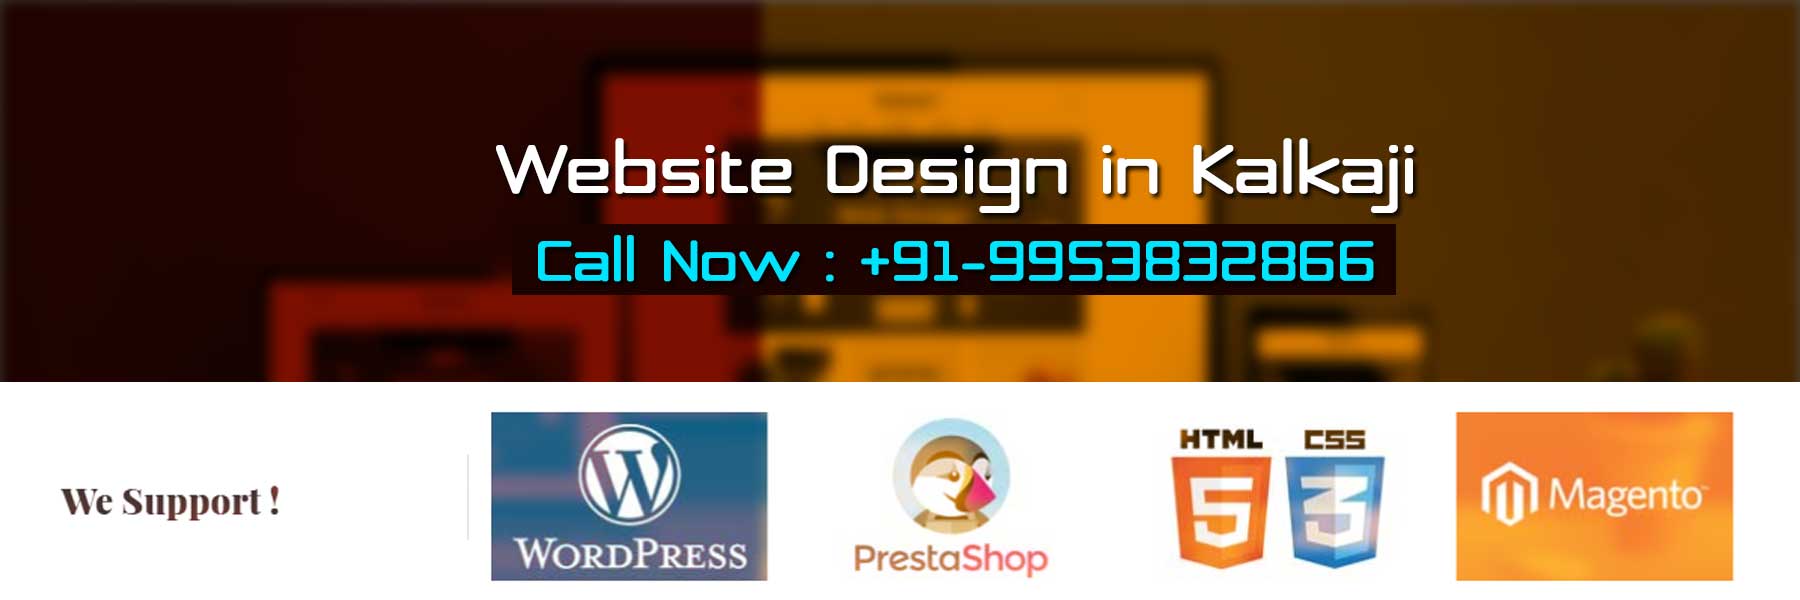 Website Design in Kalkaji